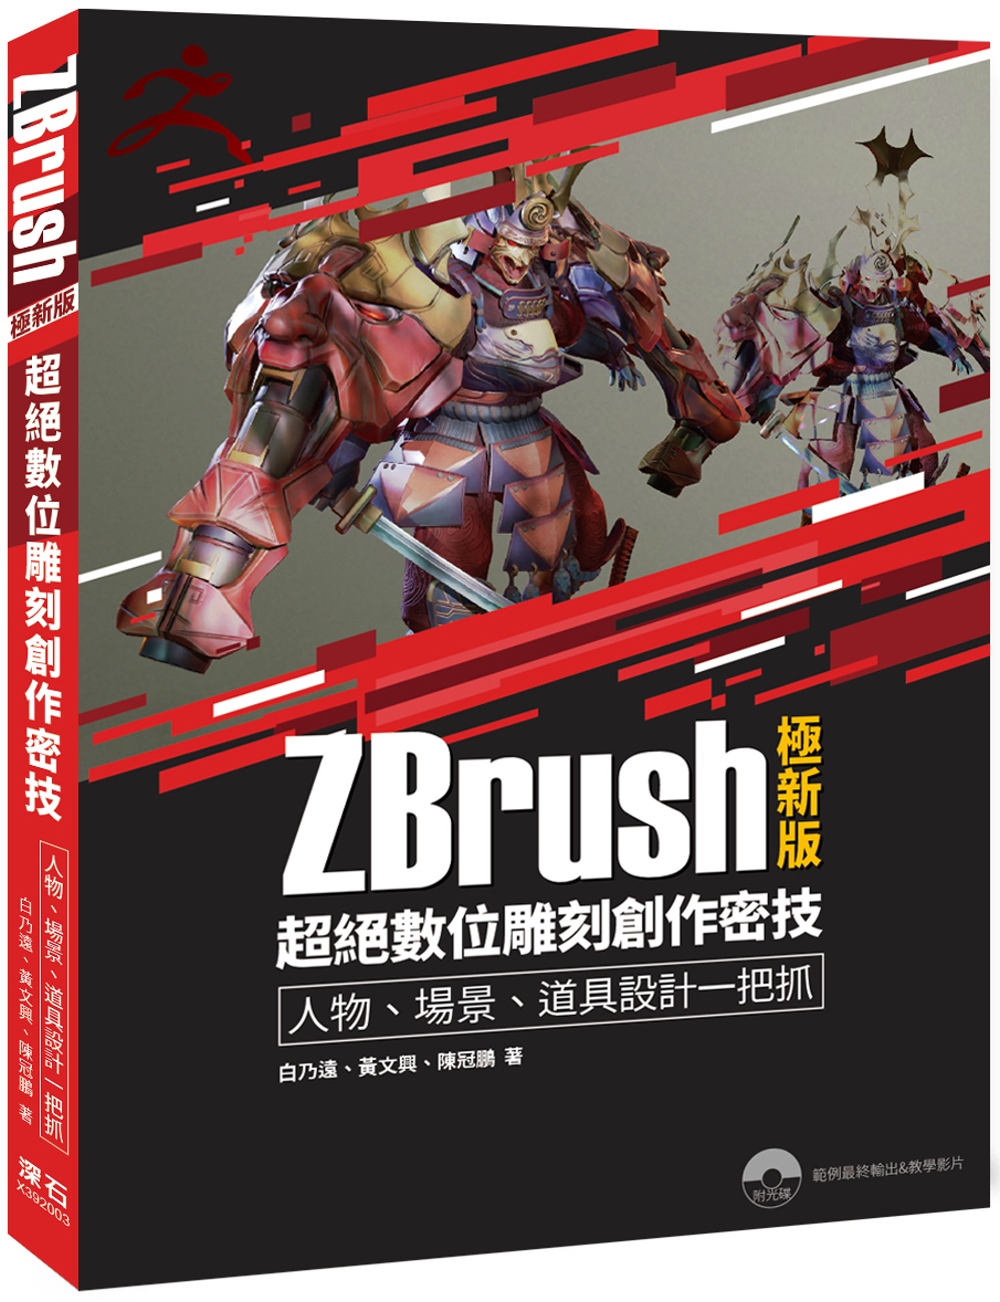 ZBrush極新版：超絕數位雕刻創作密技 人物、場景、道具設計一把抓